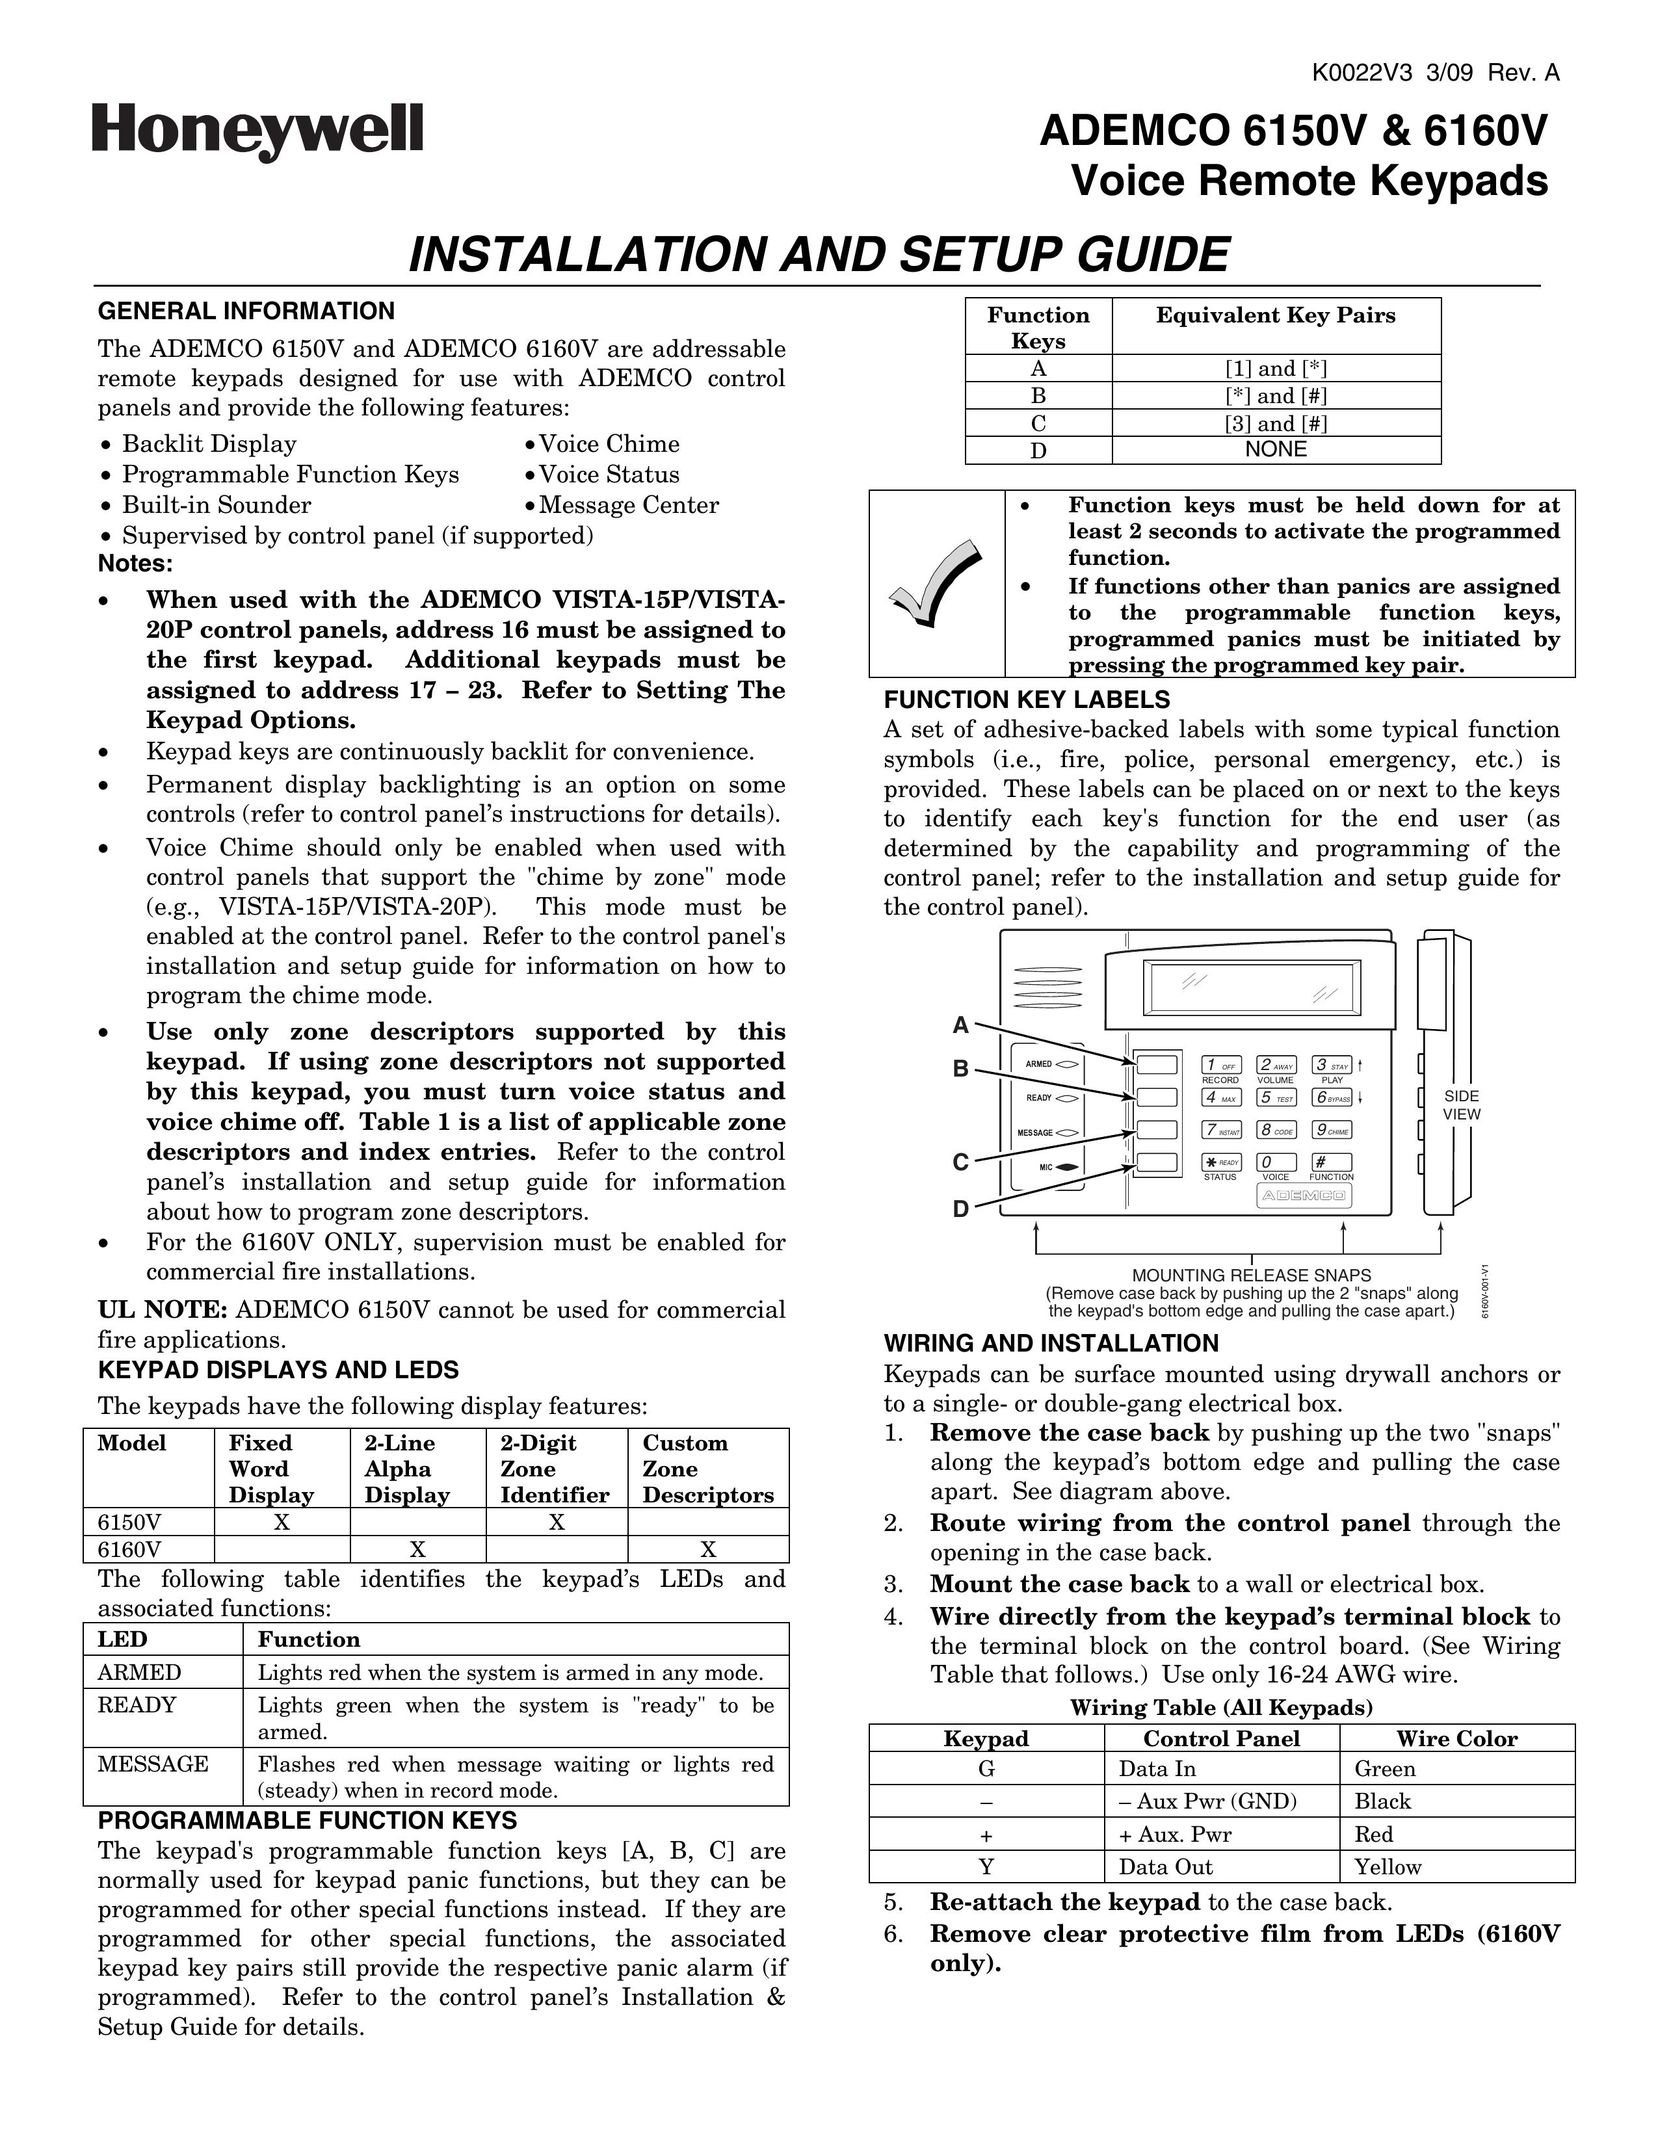 Honeywell 6150V Door User Manual